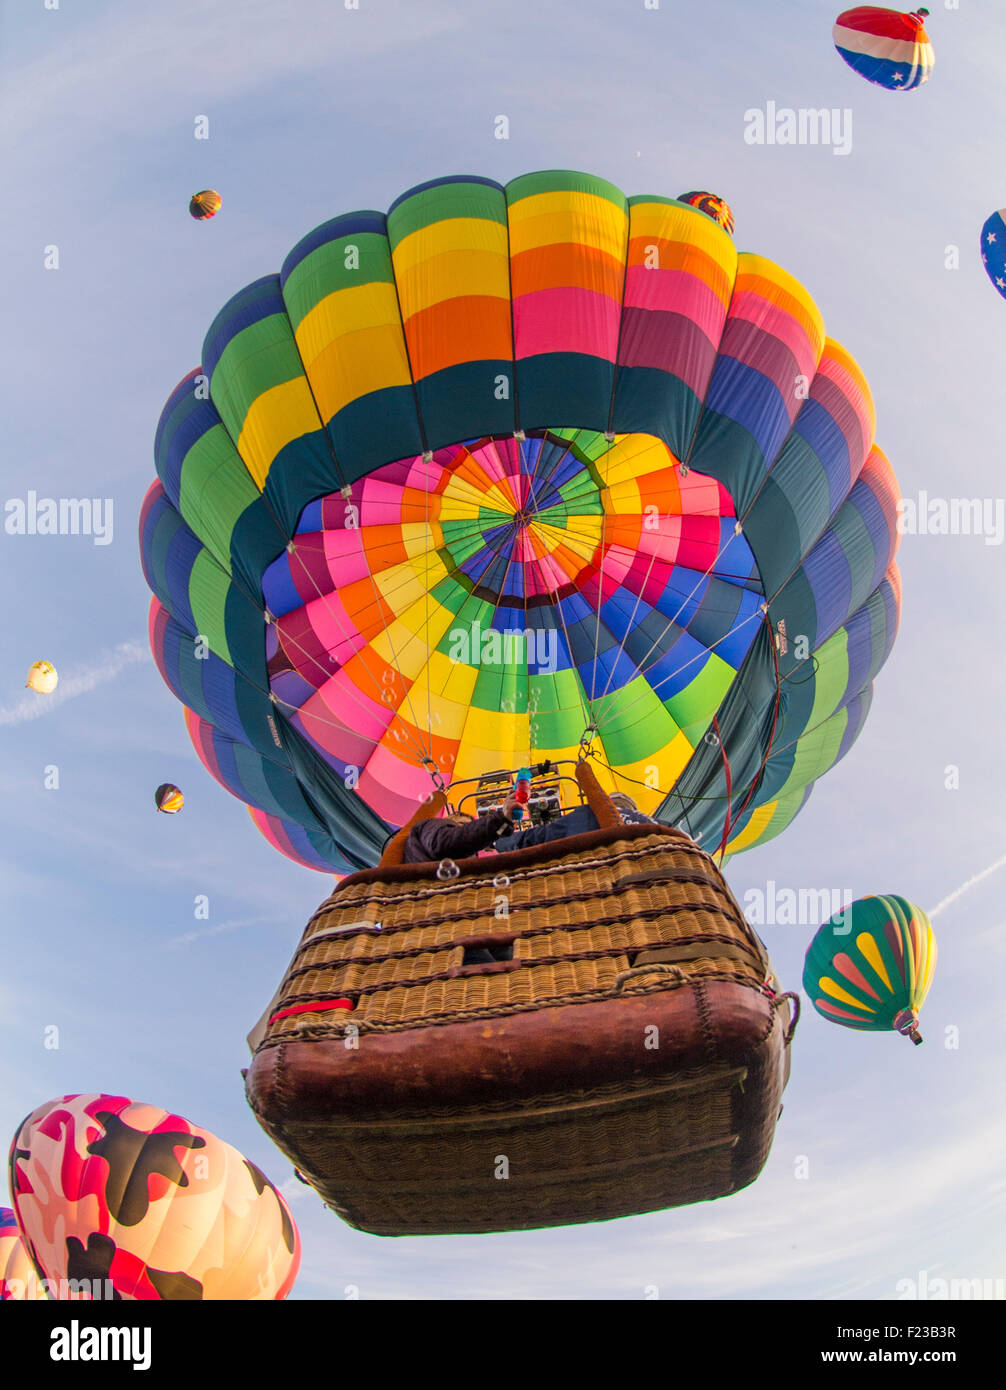 Hot Air Balloons, Spirit of Boise Balloon Classic, Ann Morrison Park, Boise, Idaho, USA Stock Photo